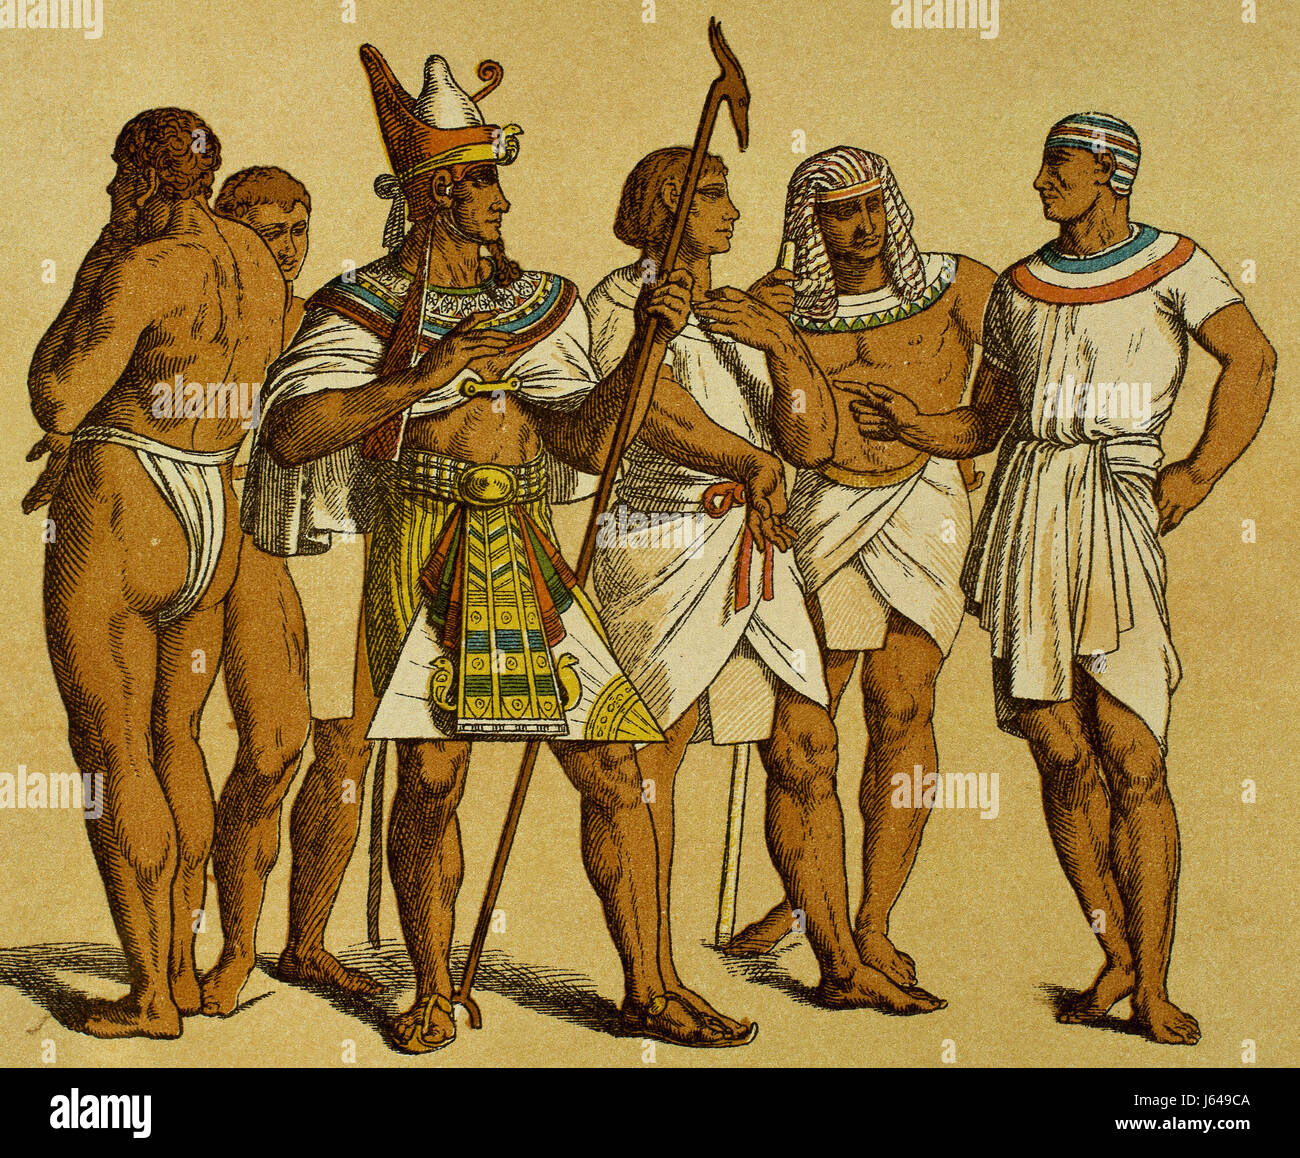 L'Égypte. Vieux Royaume. Pharaon, portant le pschent ou double couronne, avec les fonctionnaires. La gravure. La couleur. Banque D'Images